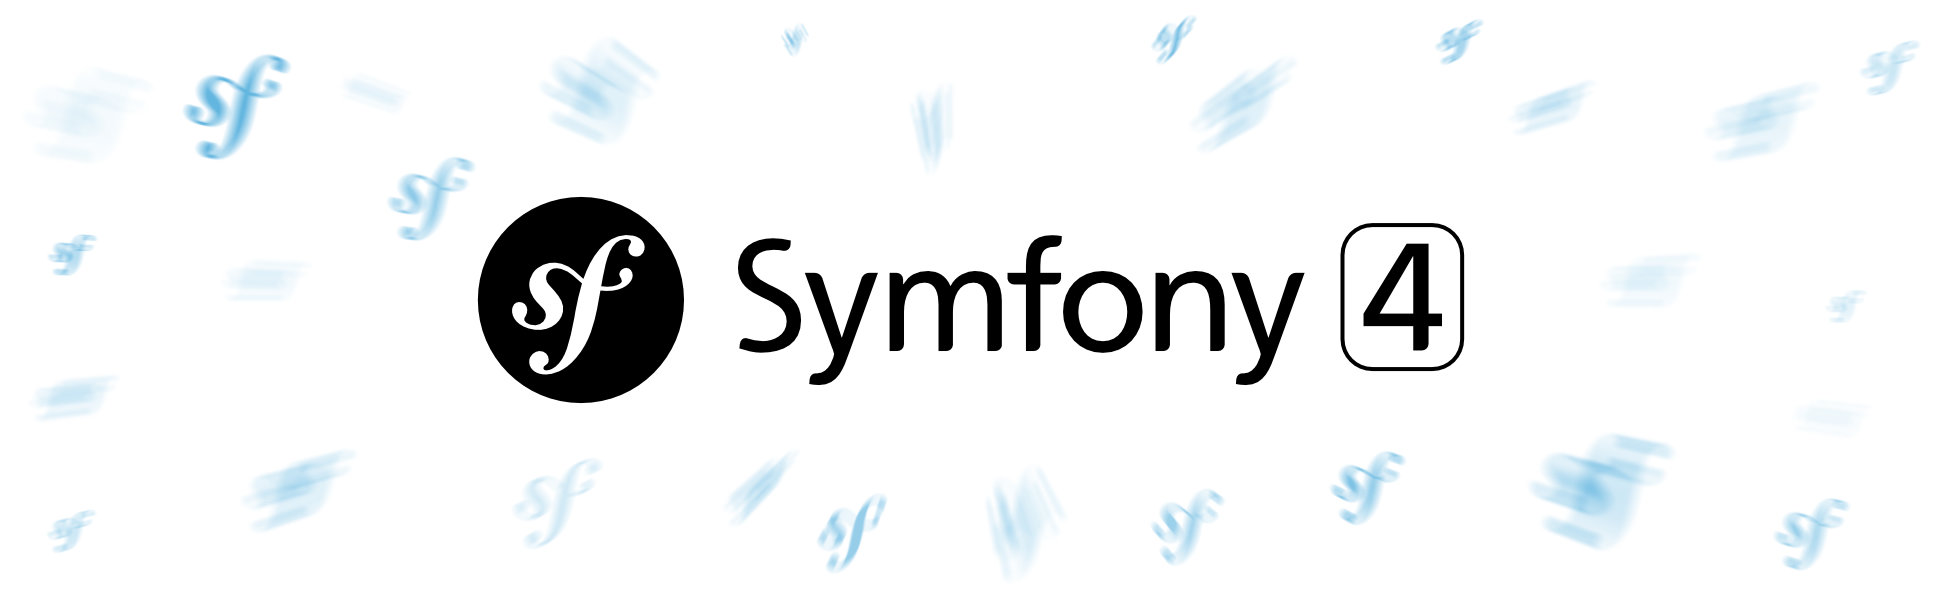 symfony-4